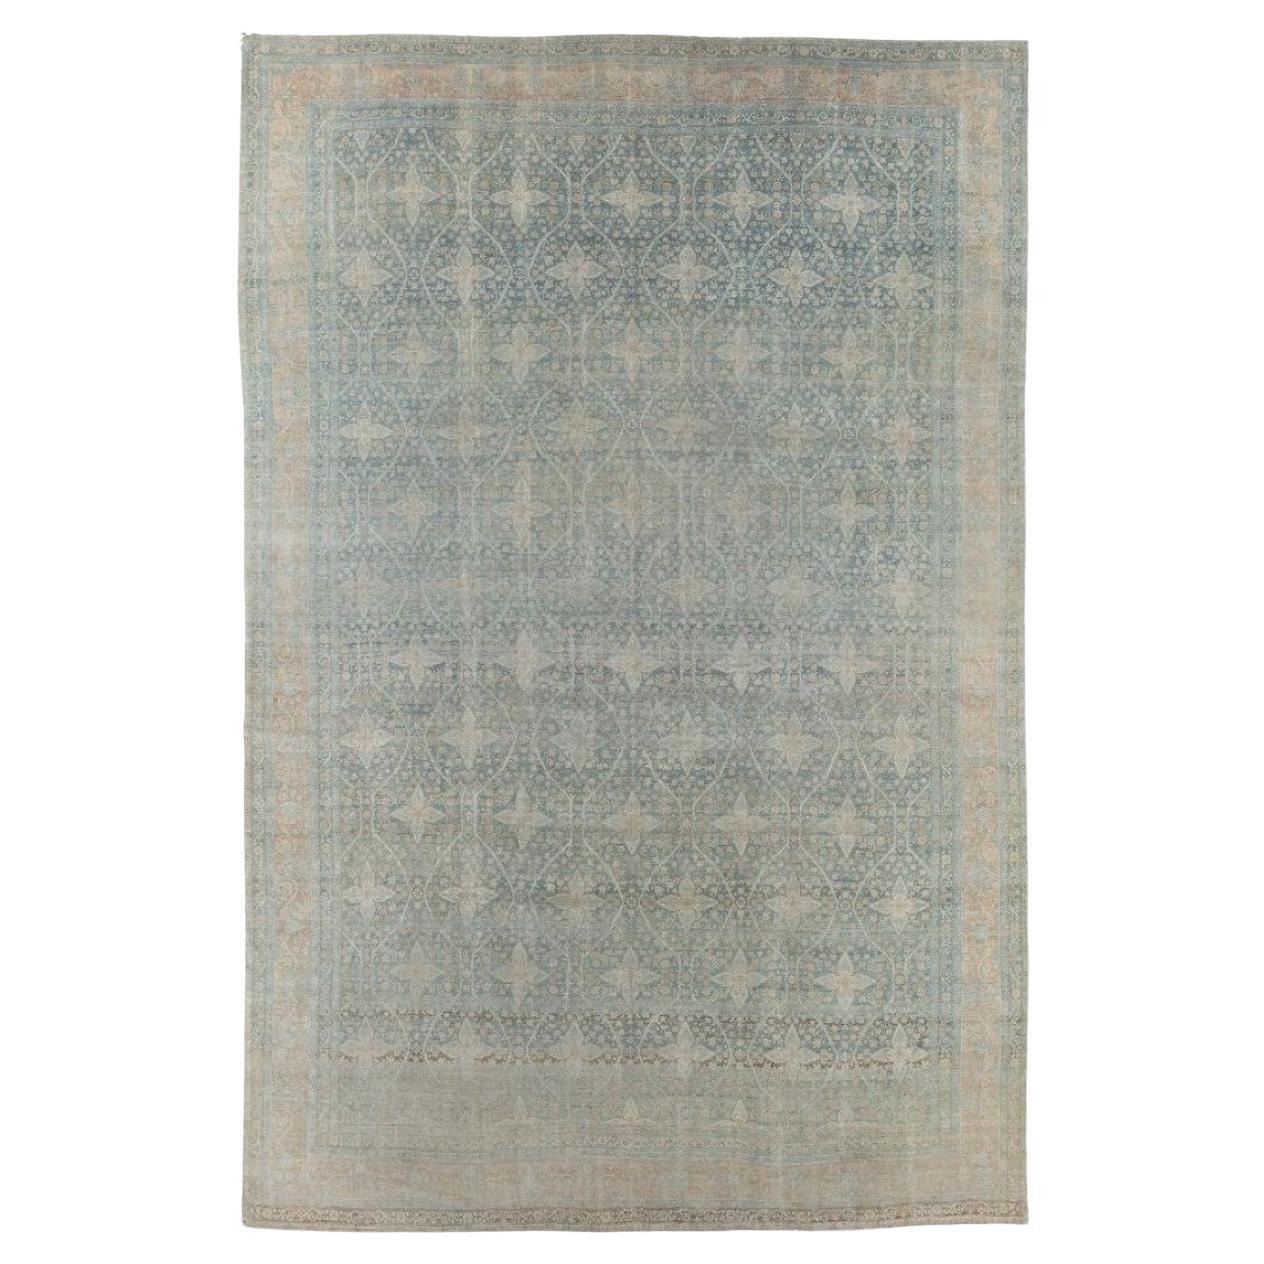 Exquis tapis persan Kerman ancien surdimensionné de la collection Zabihi 